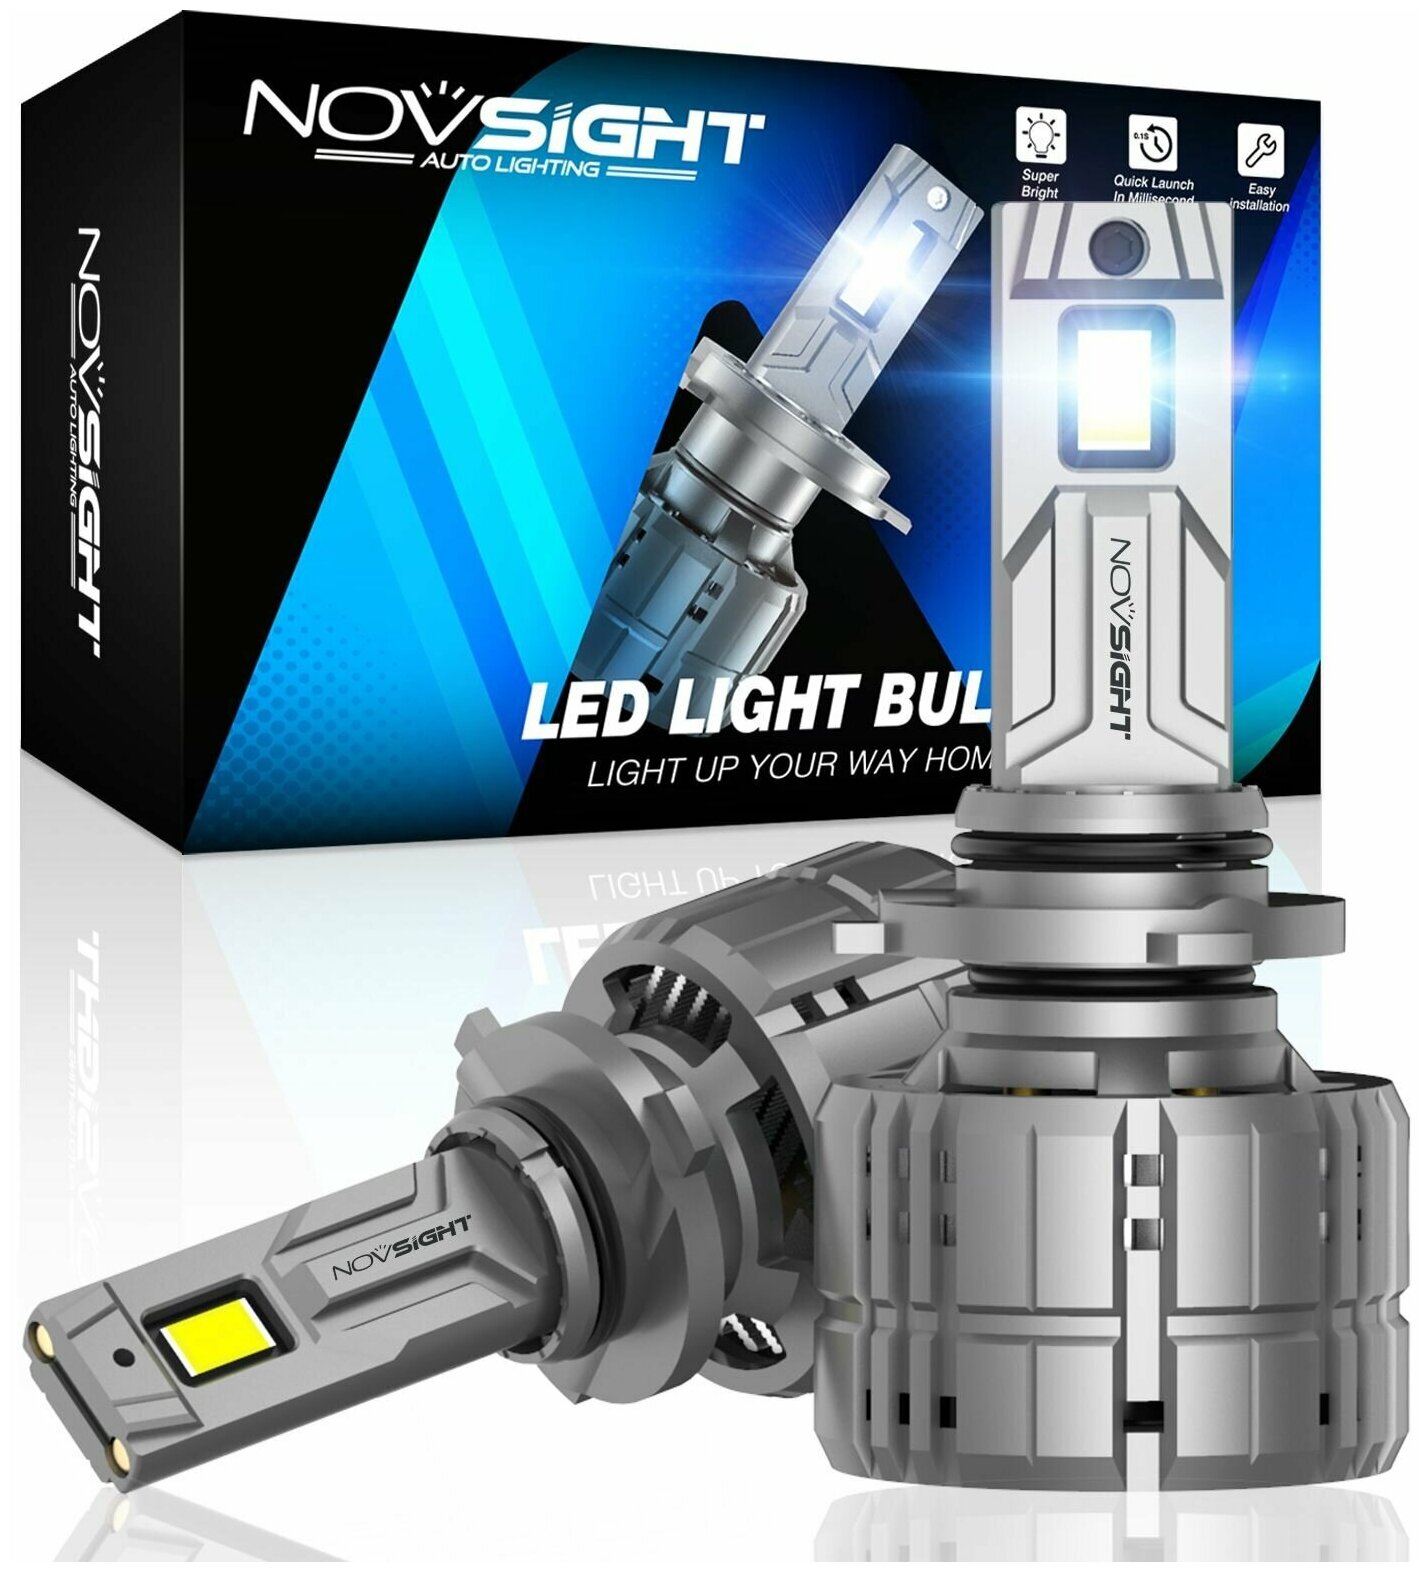 Светодиодная лампа Novsight N60 HB3 9005 цоколь P20d 200Вт 2шт 6500K 40000Лм белый свет LED автомобильная